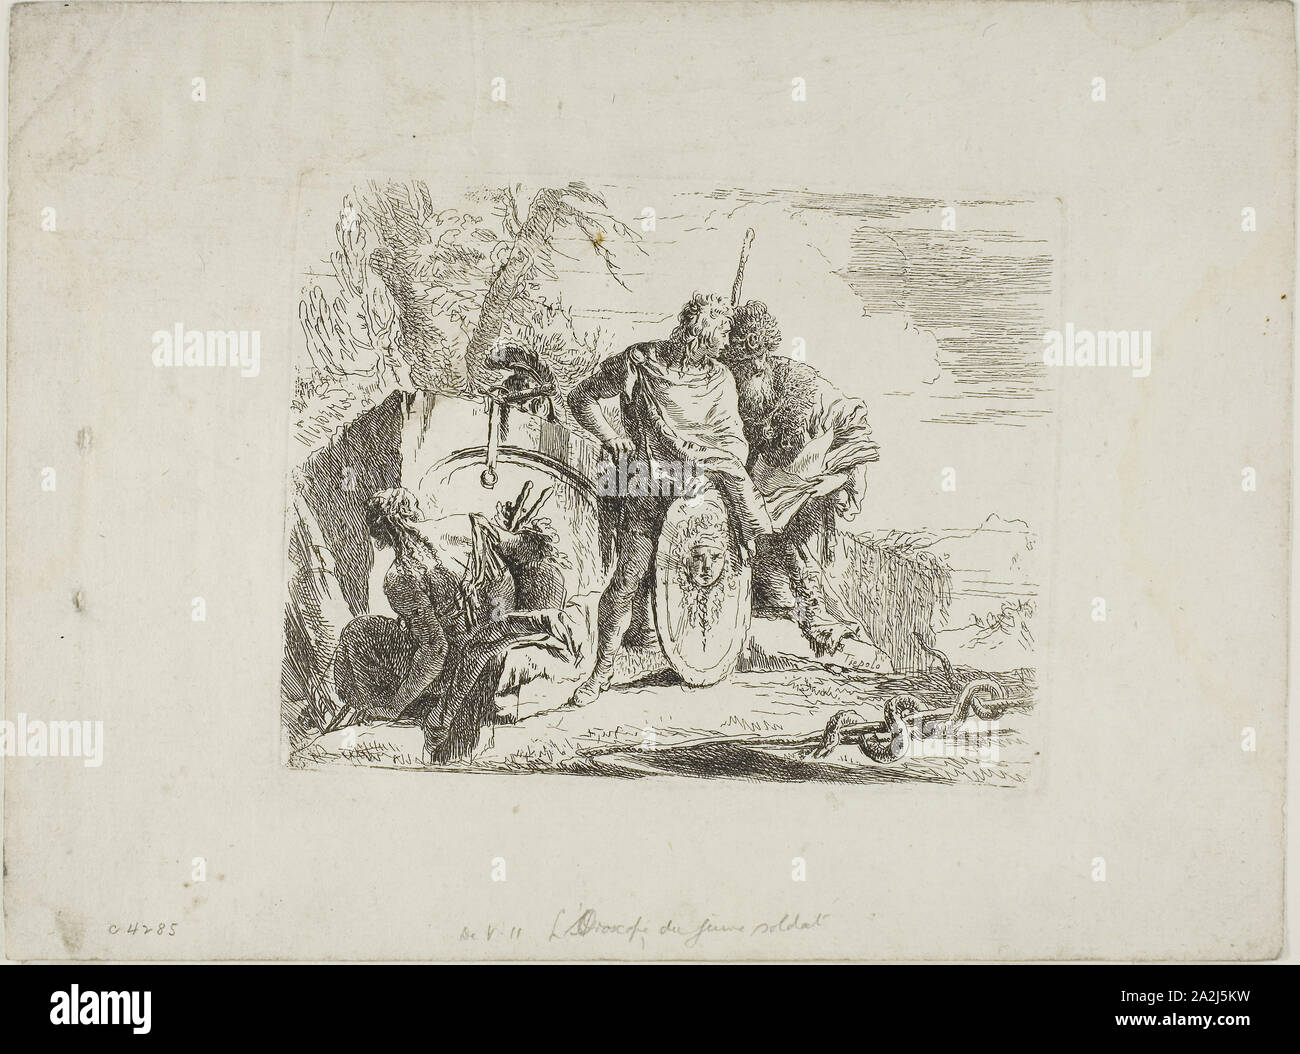 L'astrologue et le jeune soldat, de Capricci, 1740/50, Giambattista Tiepolo, italien, 1696-1770, l'Italie, de gravure sur papier, 140 x 180 mm Banque D'Images